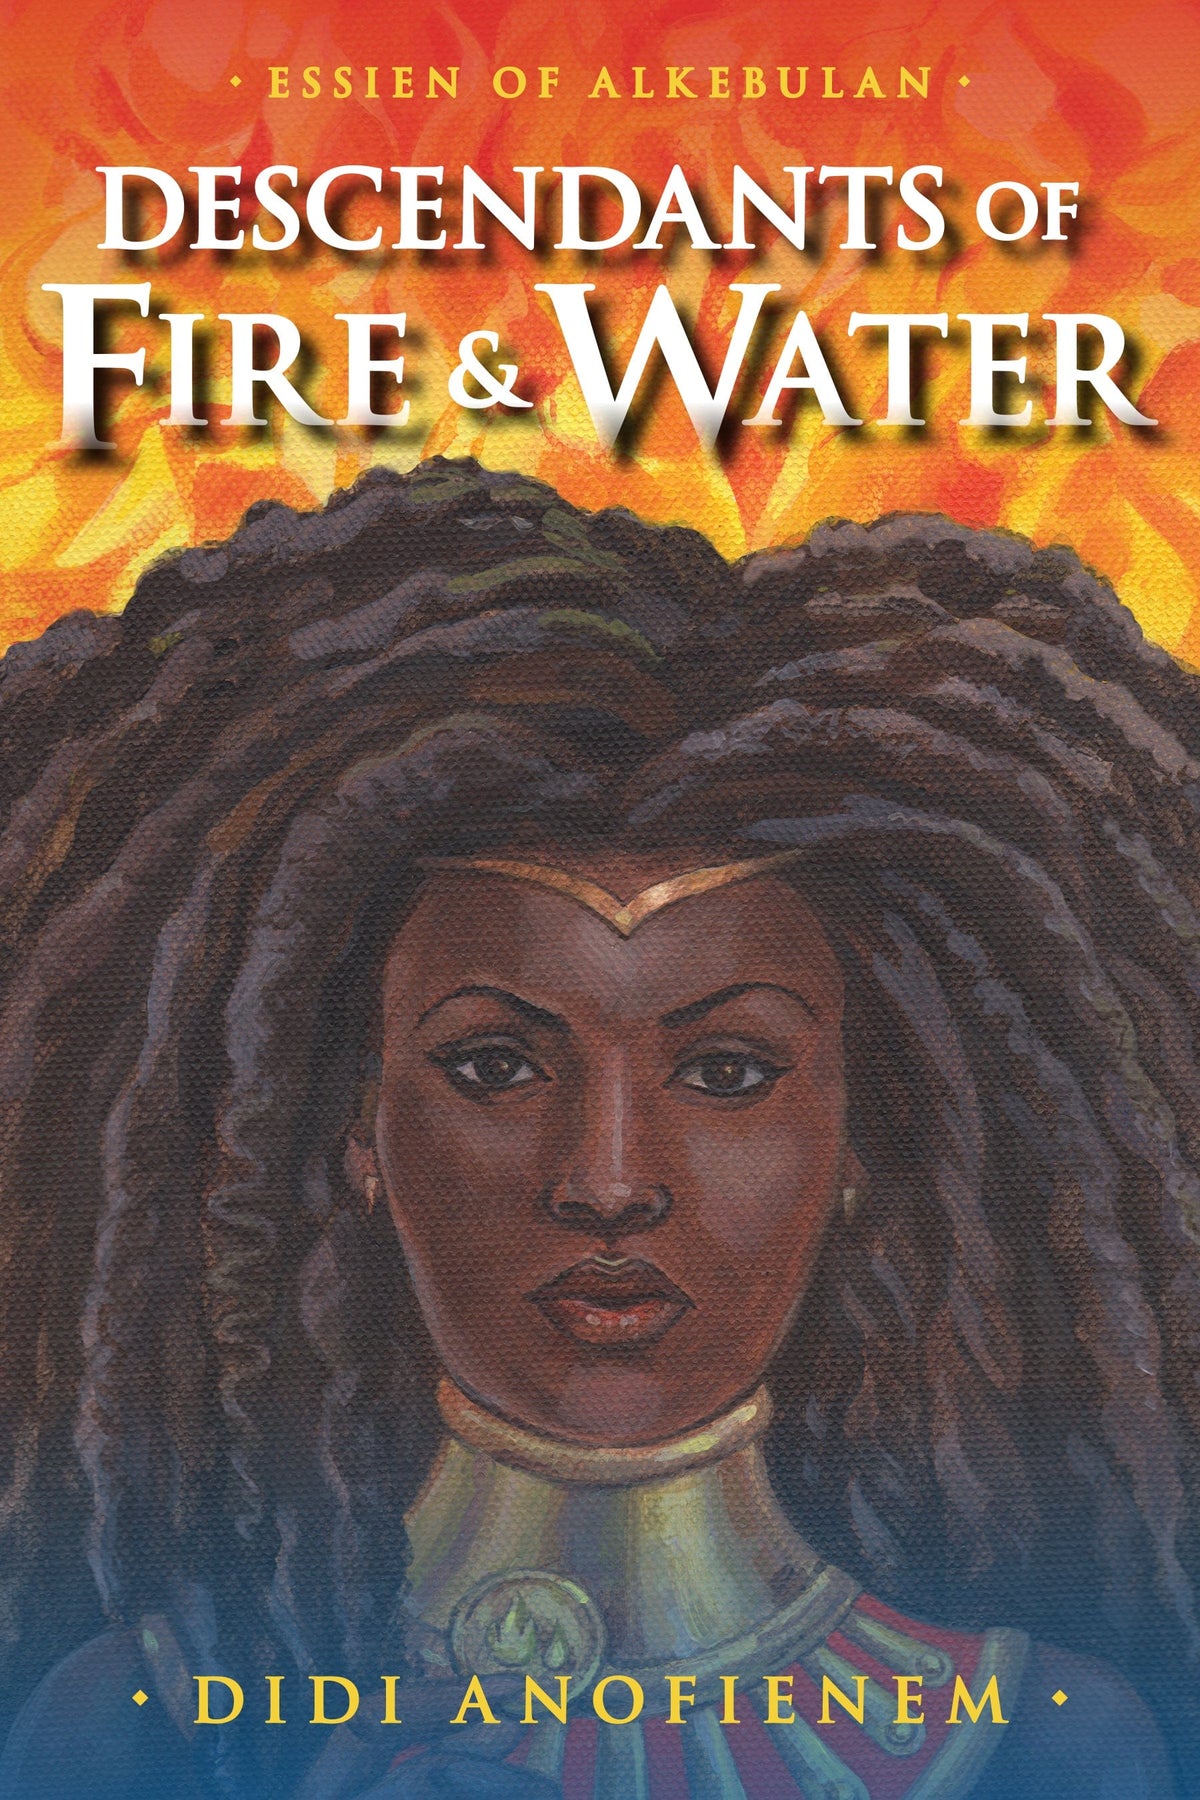  Fire & Water